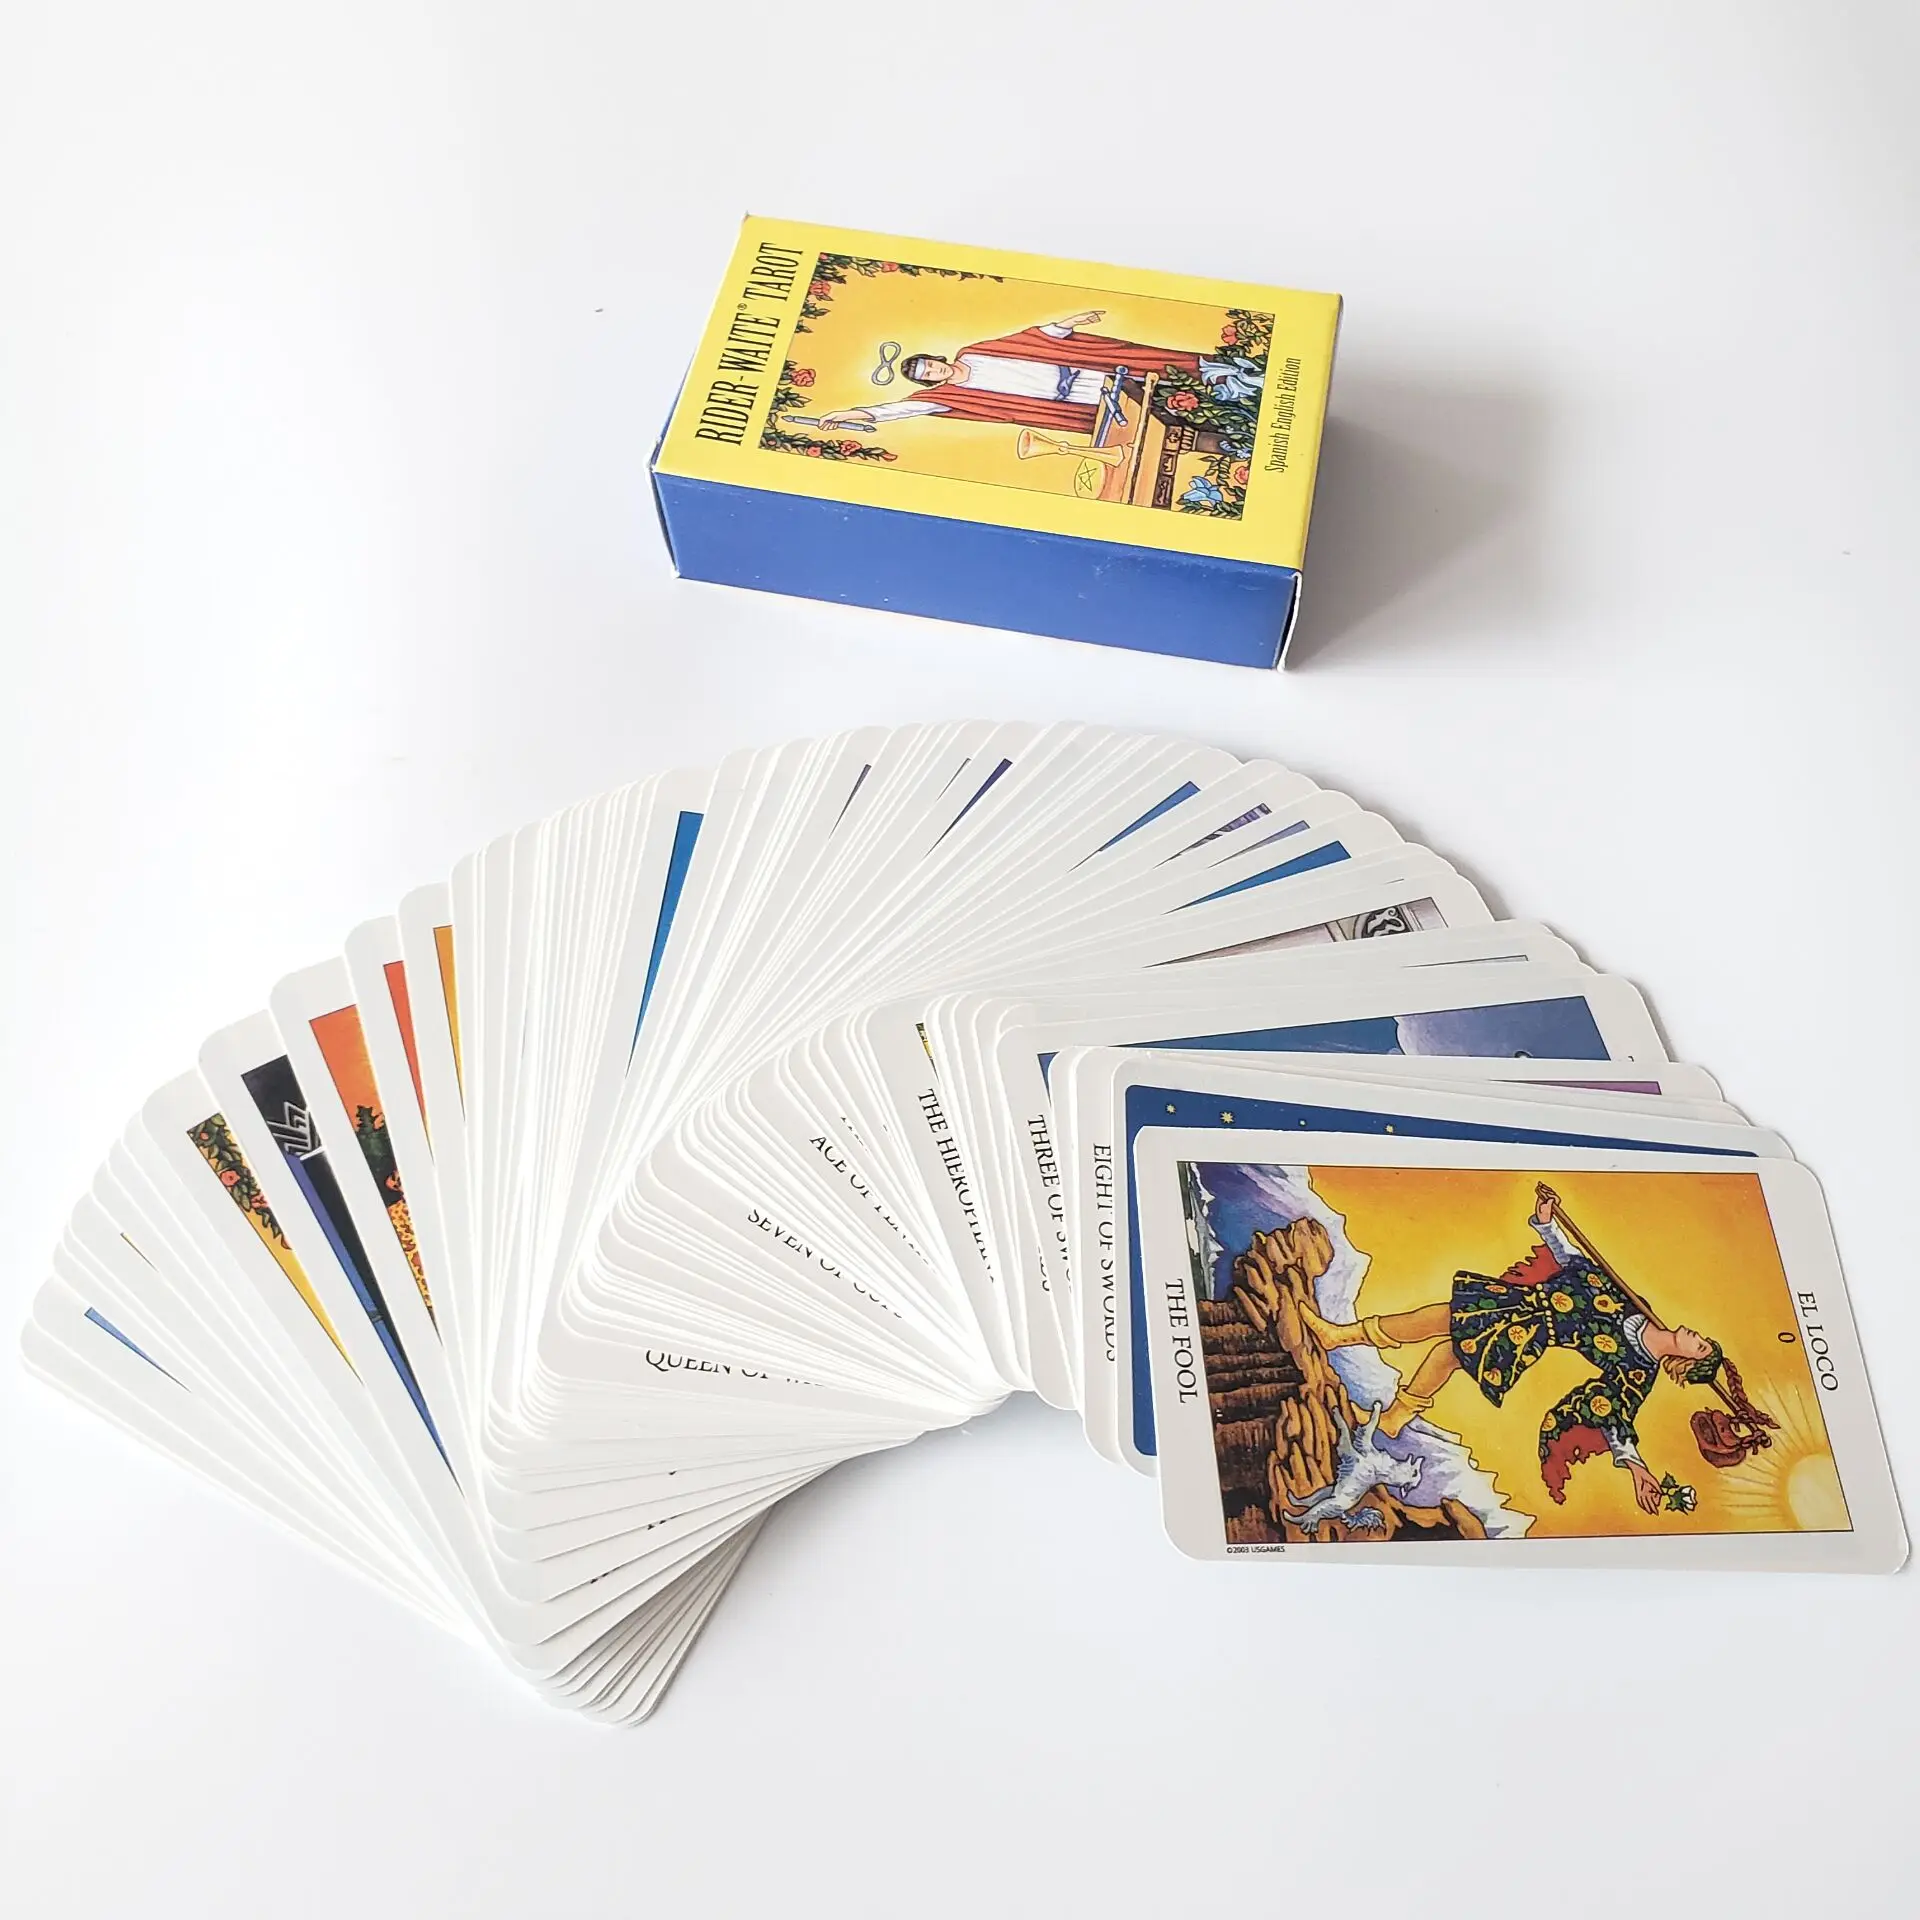 Таро карты колода на испанском языке с книгой Райдер оракул игры гадания